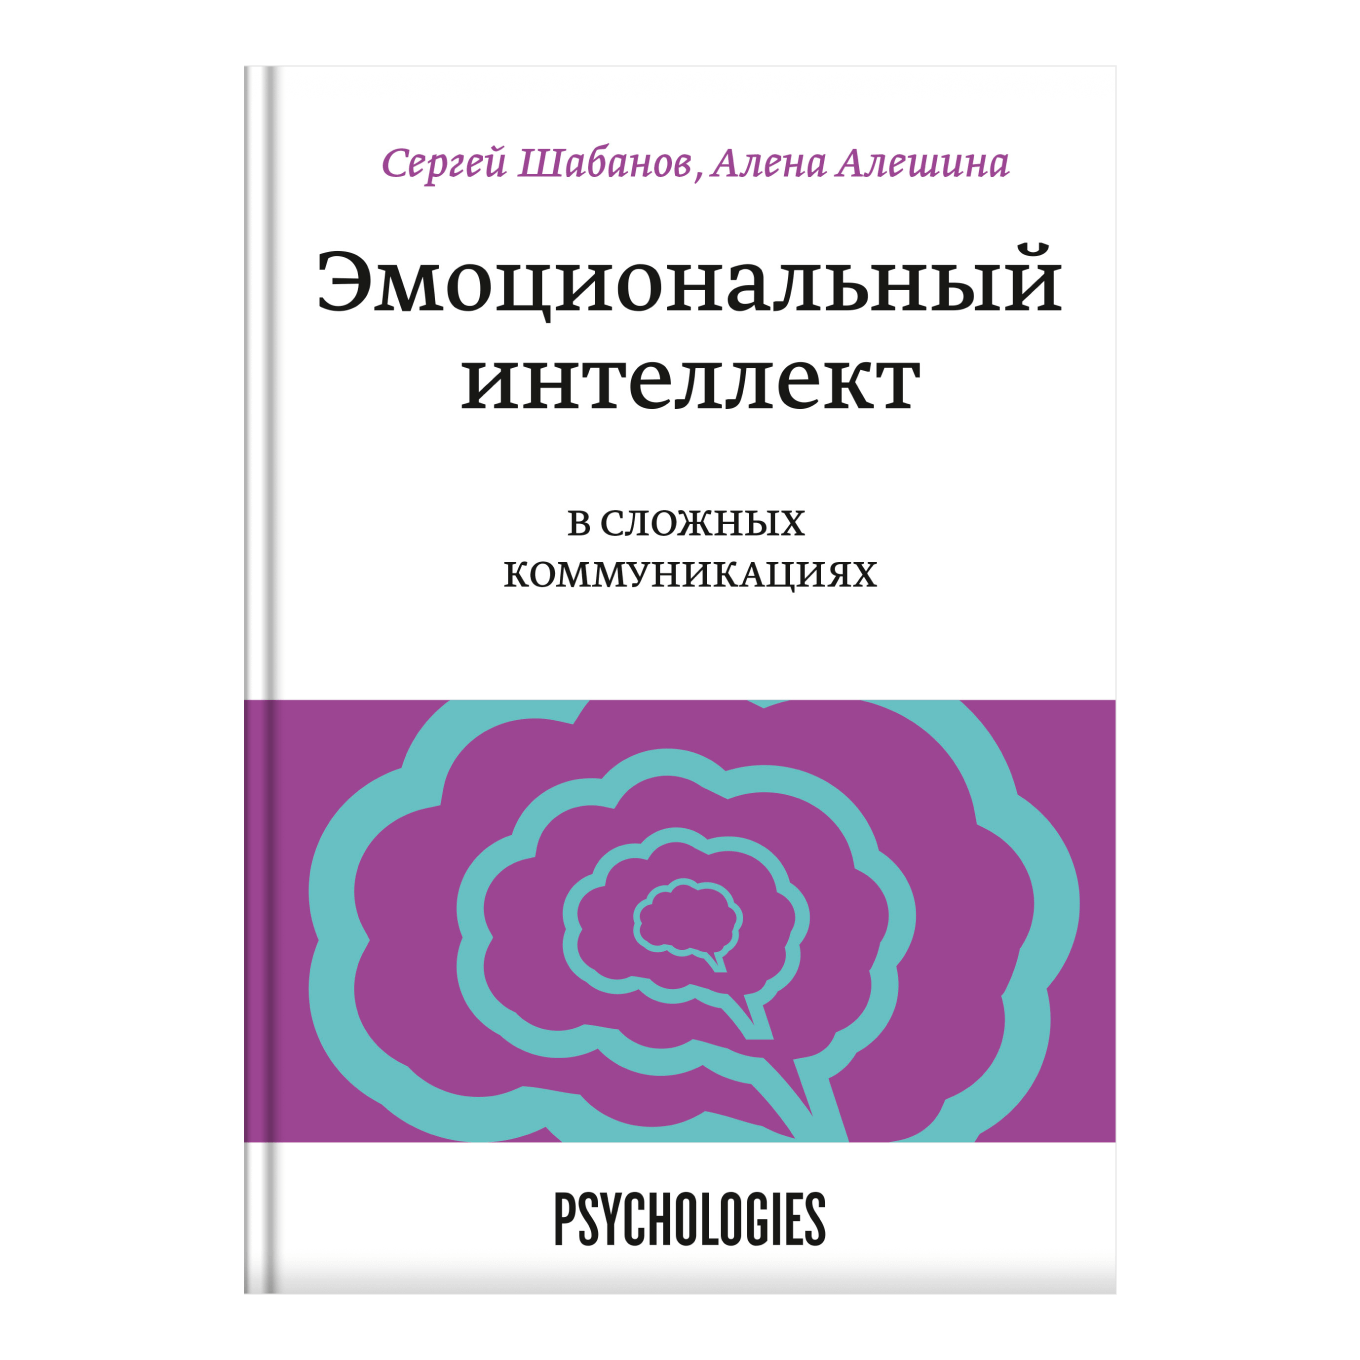 Книга «Эмоциональный интеллект в сложных коммуникациях», Сергей Шабанов, Алена Алешина